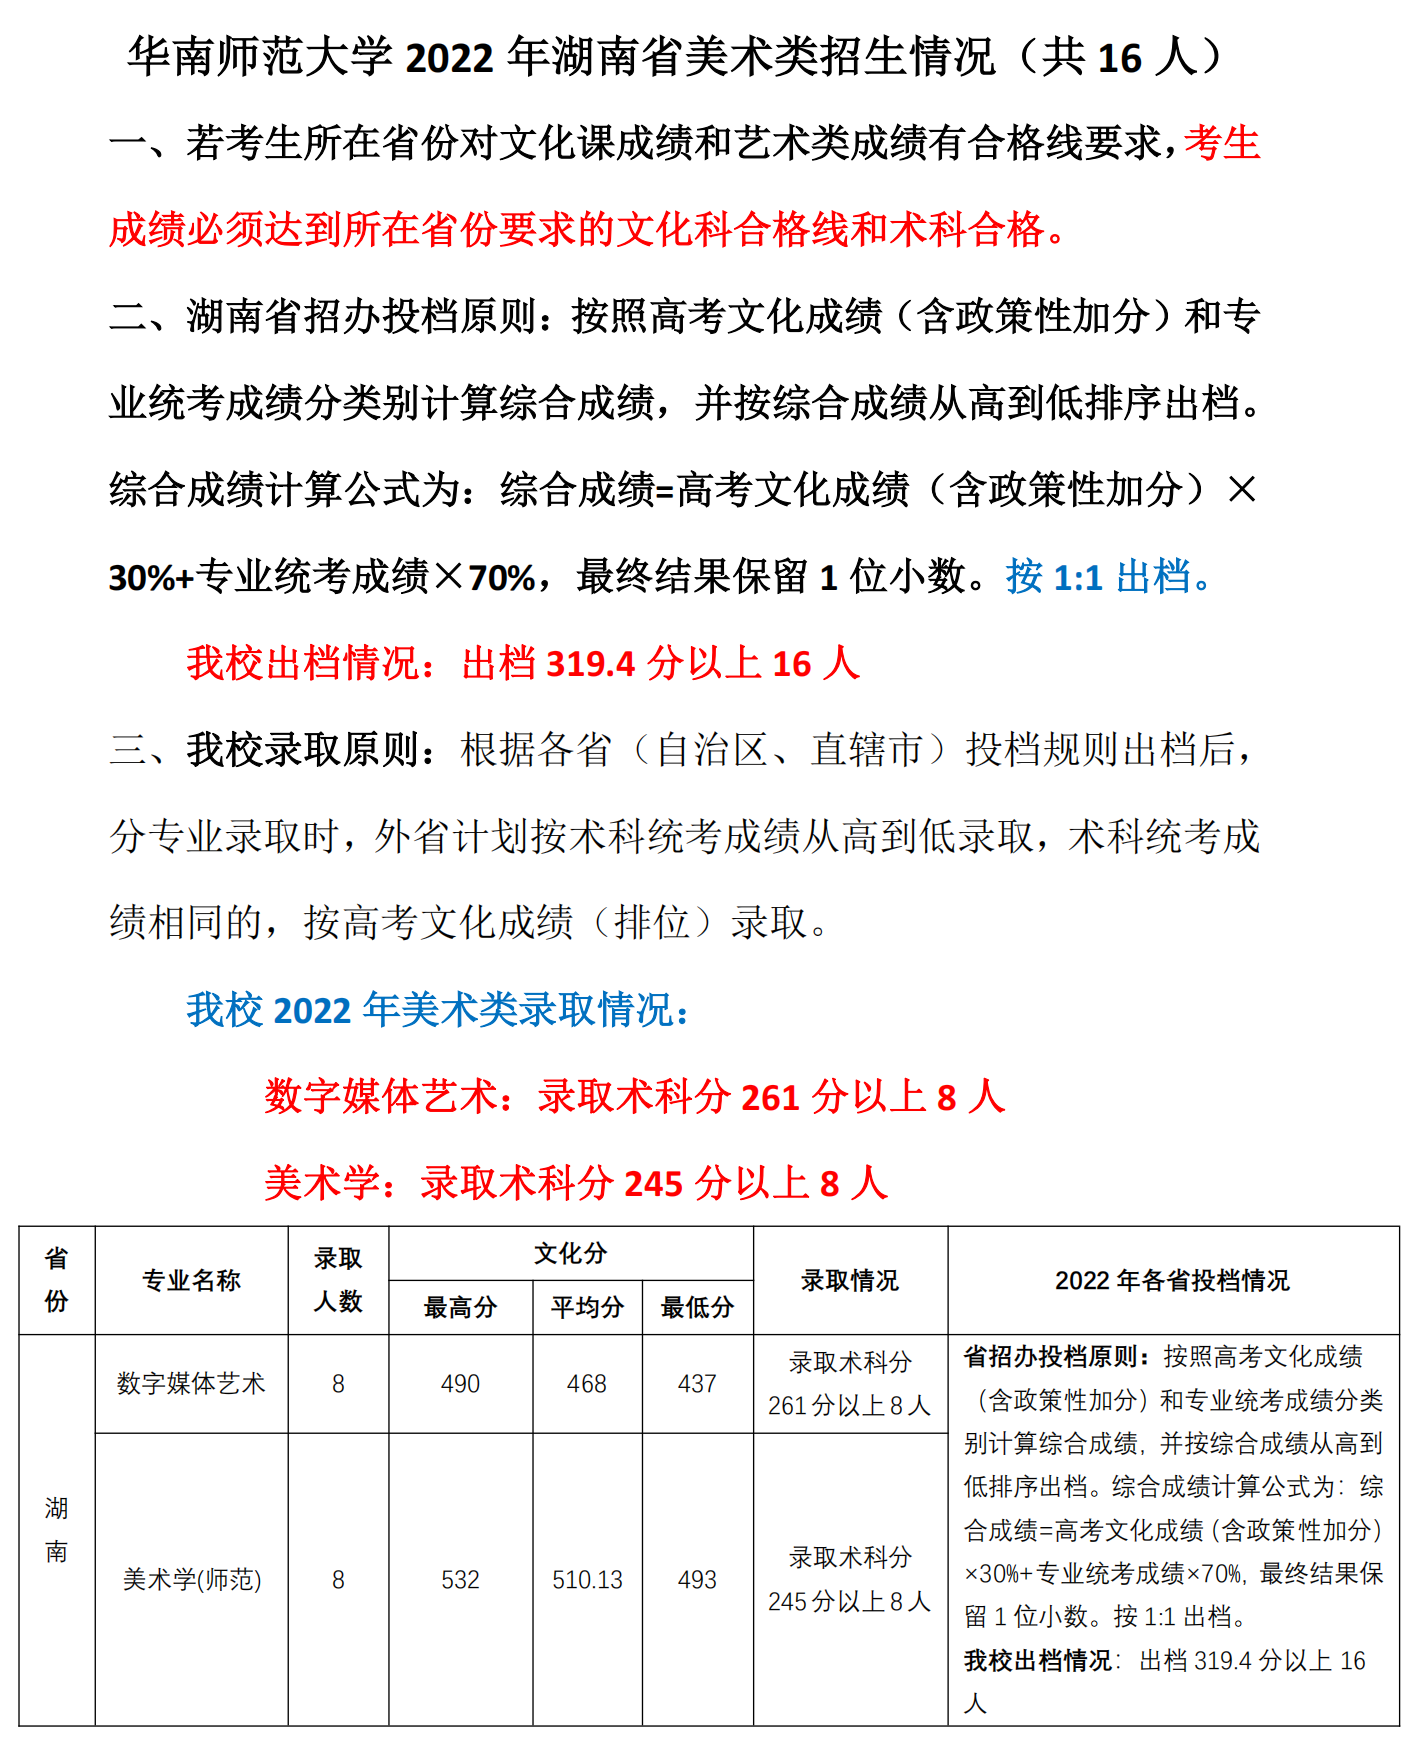 7、2022年湖南省美术类招生情况（共16人）